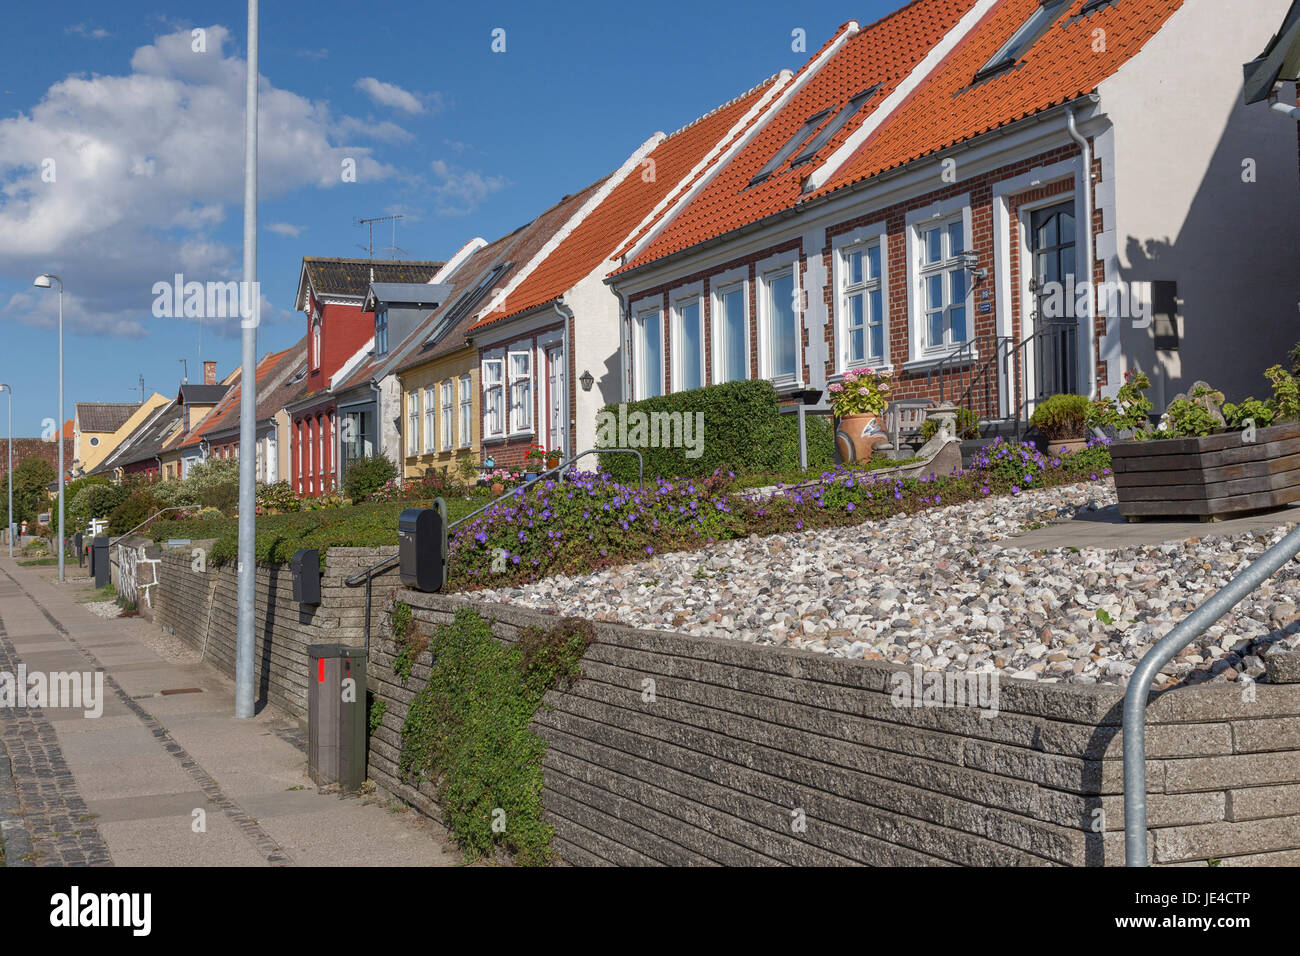 Eine Reihe kleiner Häuser am Hafen von Rudkøbing, Langeland, Dänemark Foto Stock